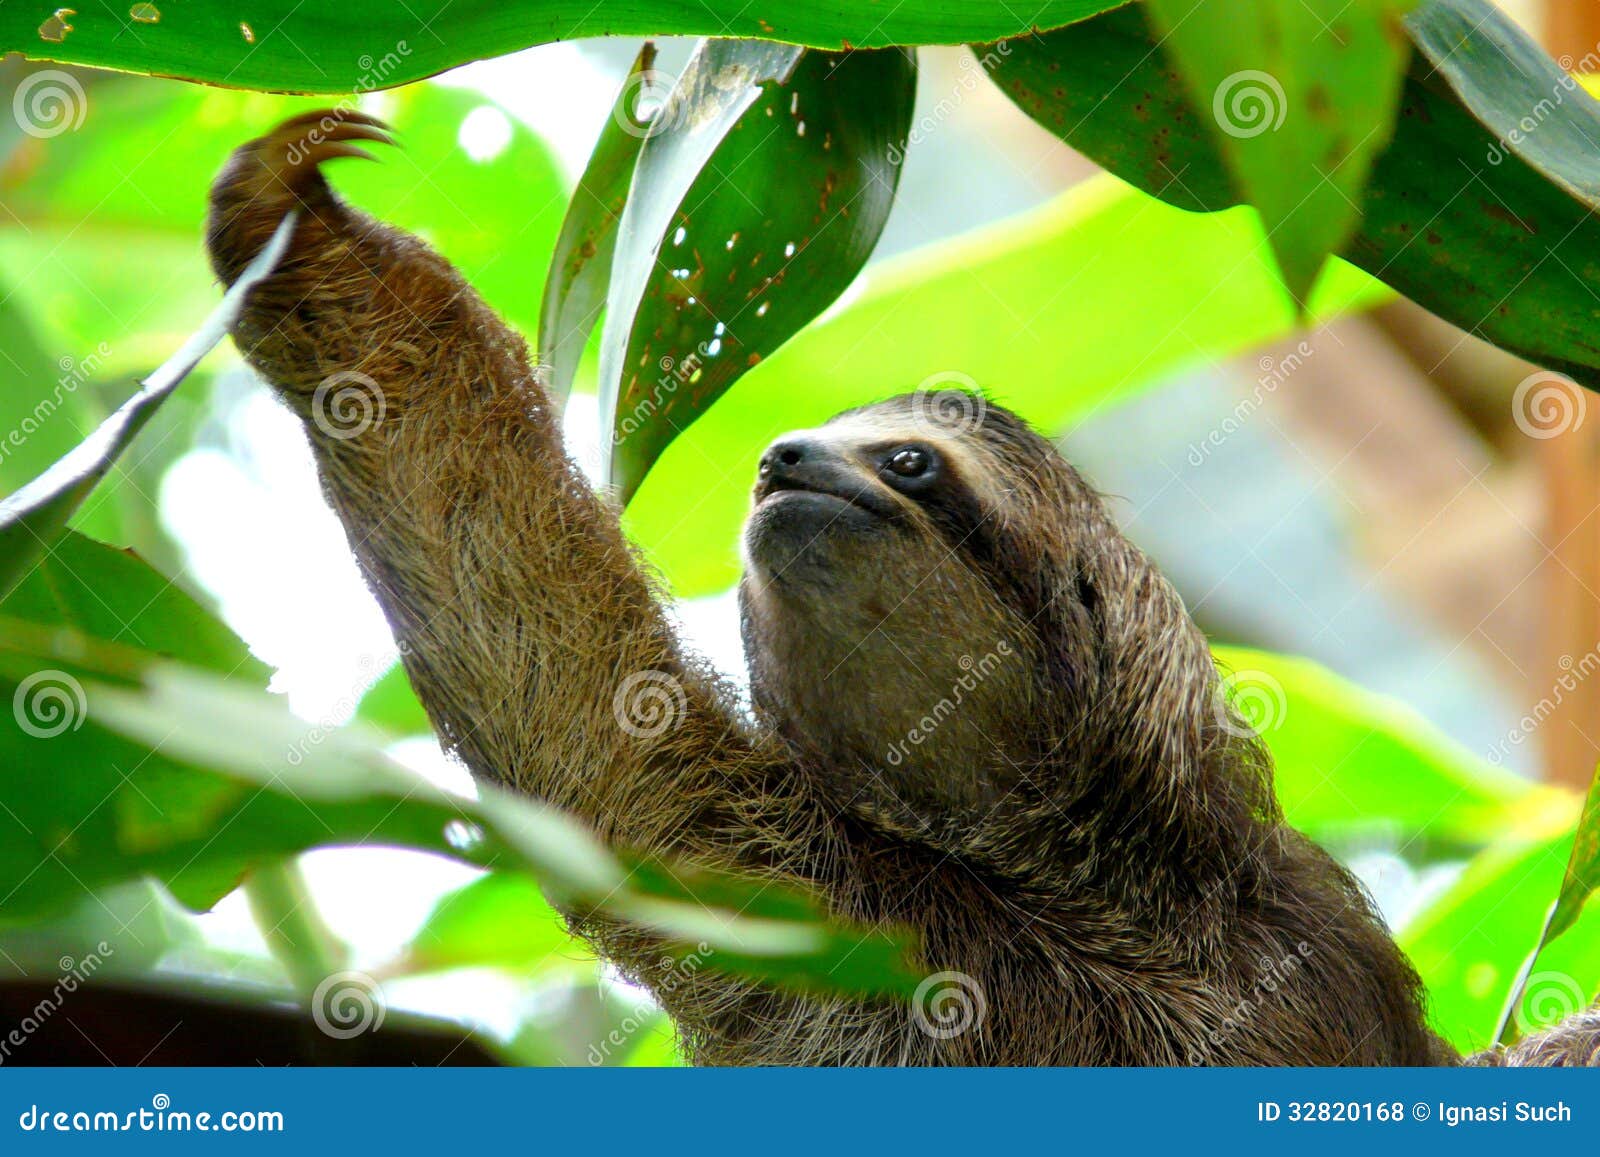 sloth in puerto viejo, costa rica